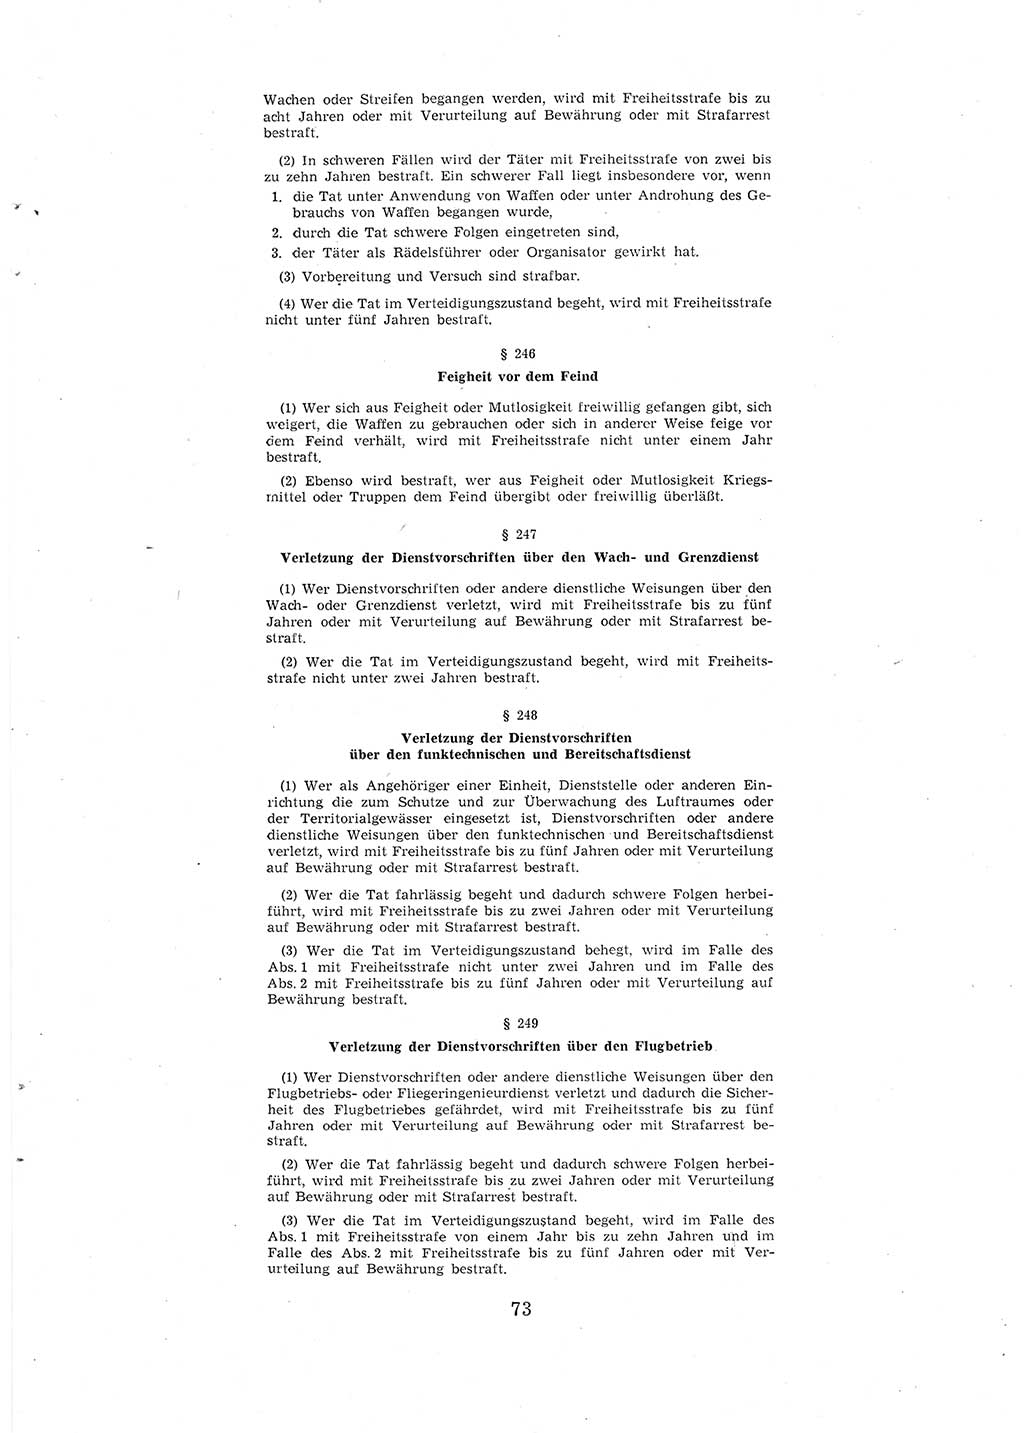 Entwurf des Strafgesetzbuches (StGB) der Deutschen Demokratischen Republik (DDR) 1967, Seite 73 (Entw. StGB DDR 1967, S. 73)